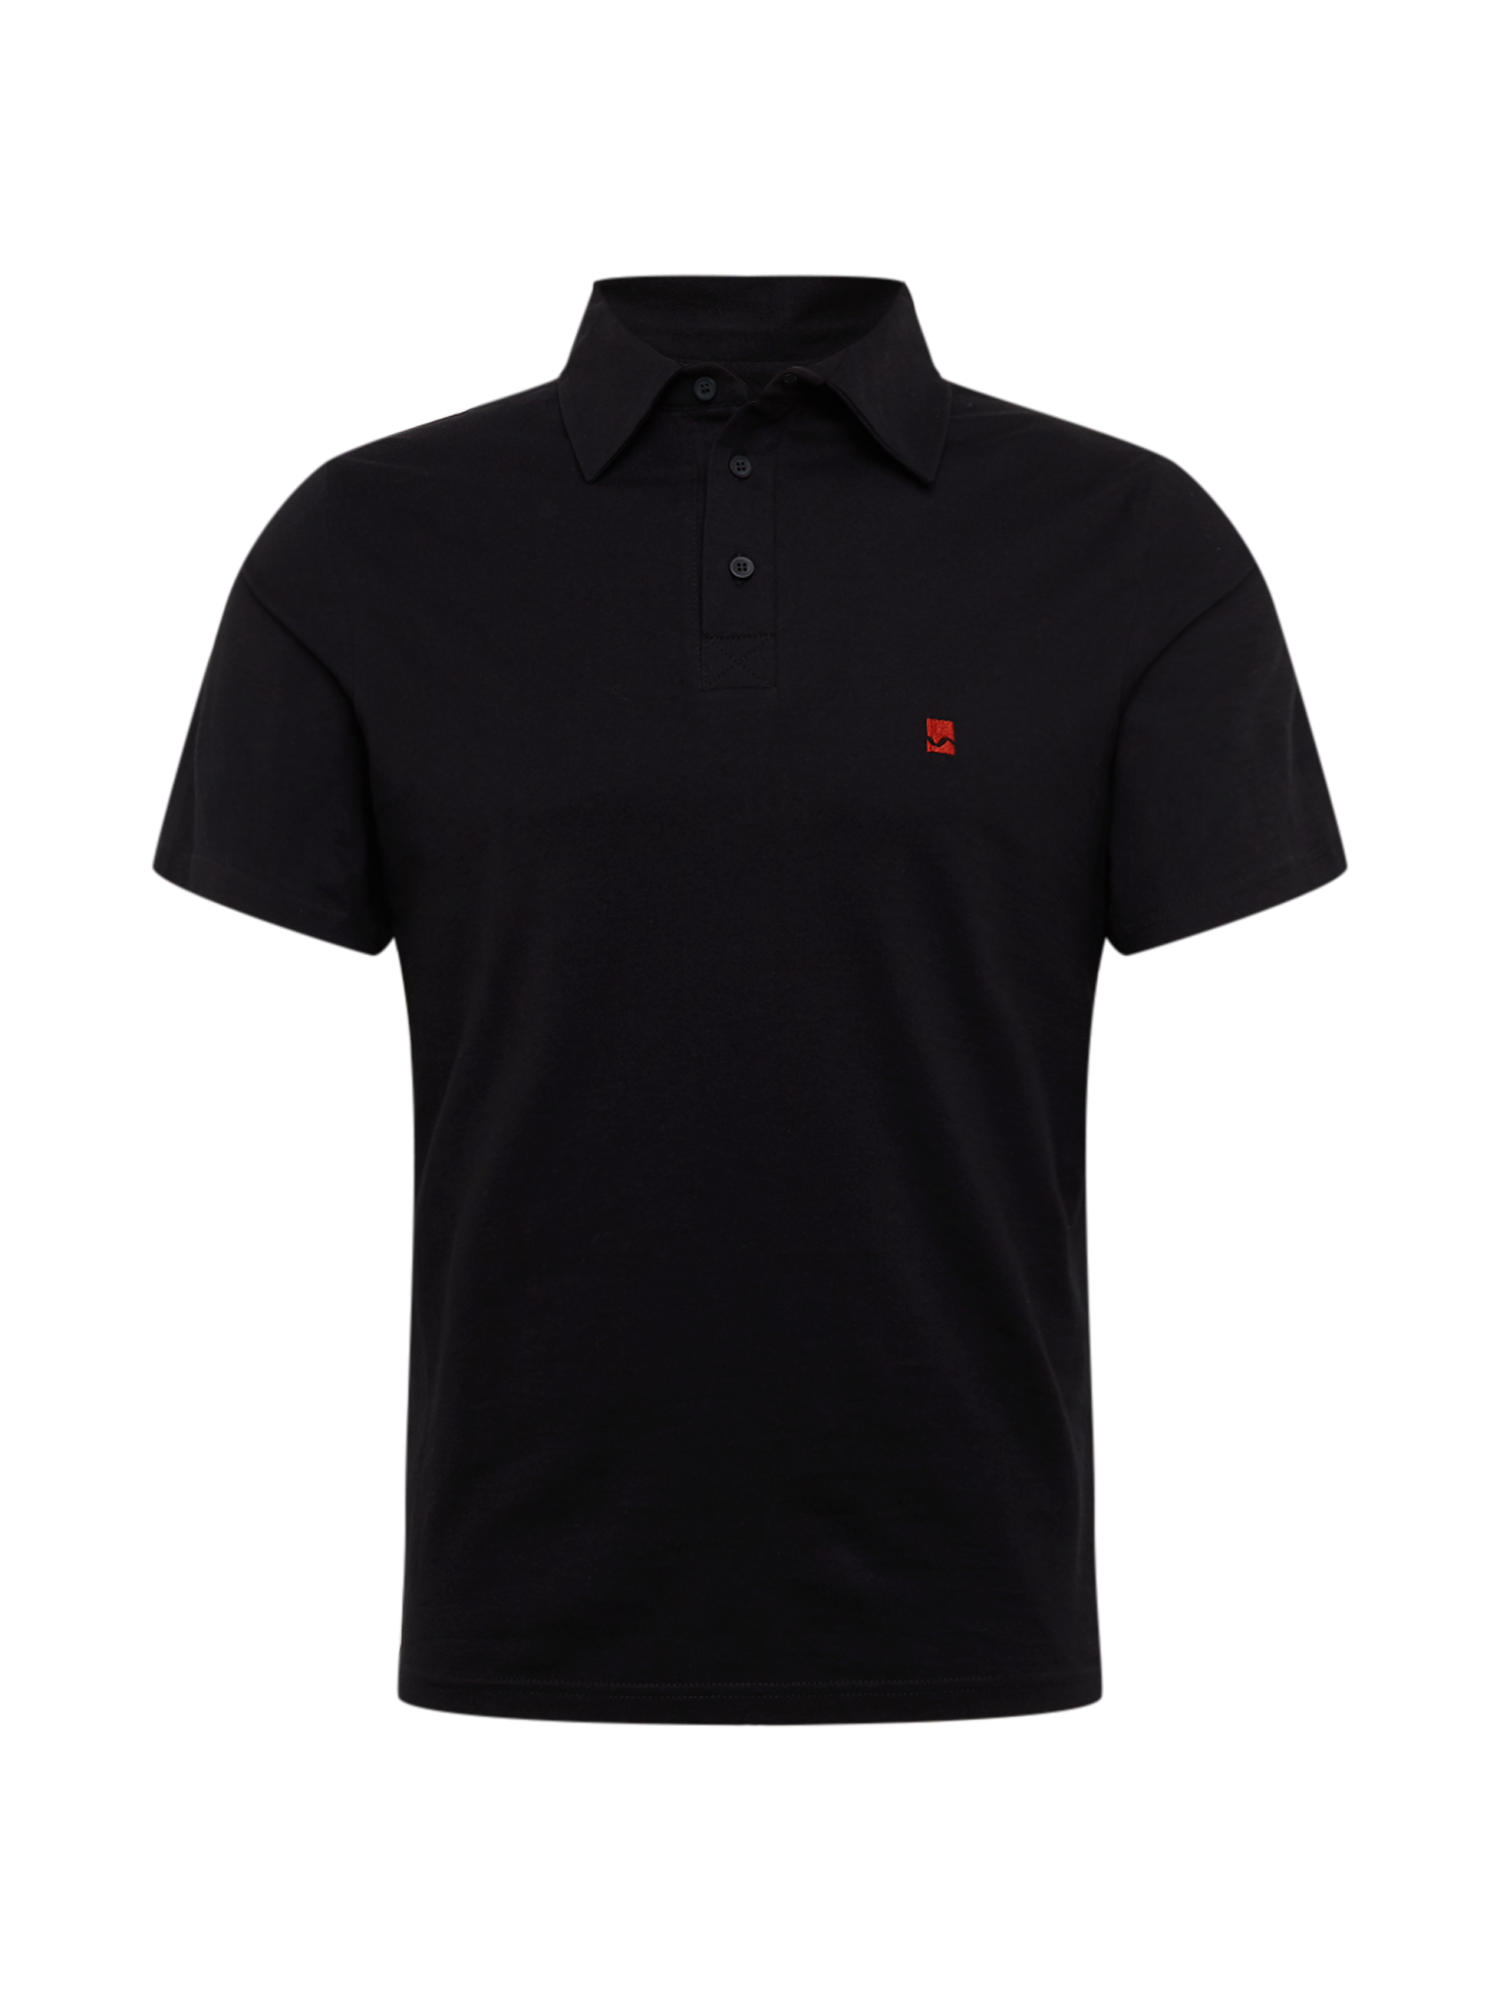 Bardziej zrównoważony Odzież Degree Koszulka w kolorze Czarnym 